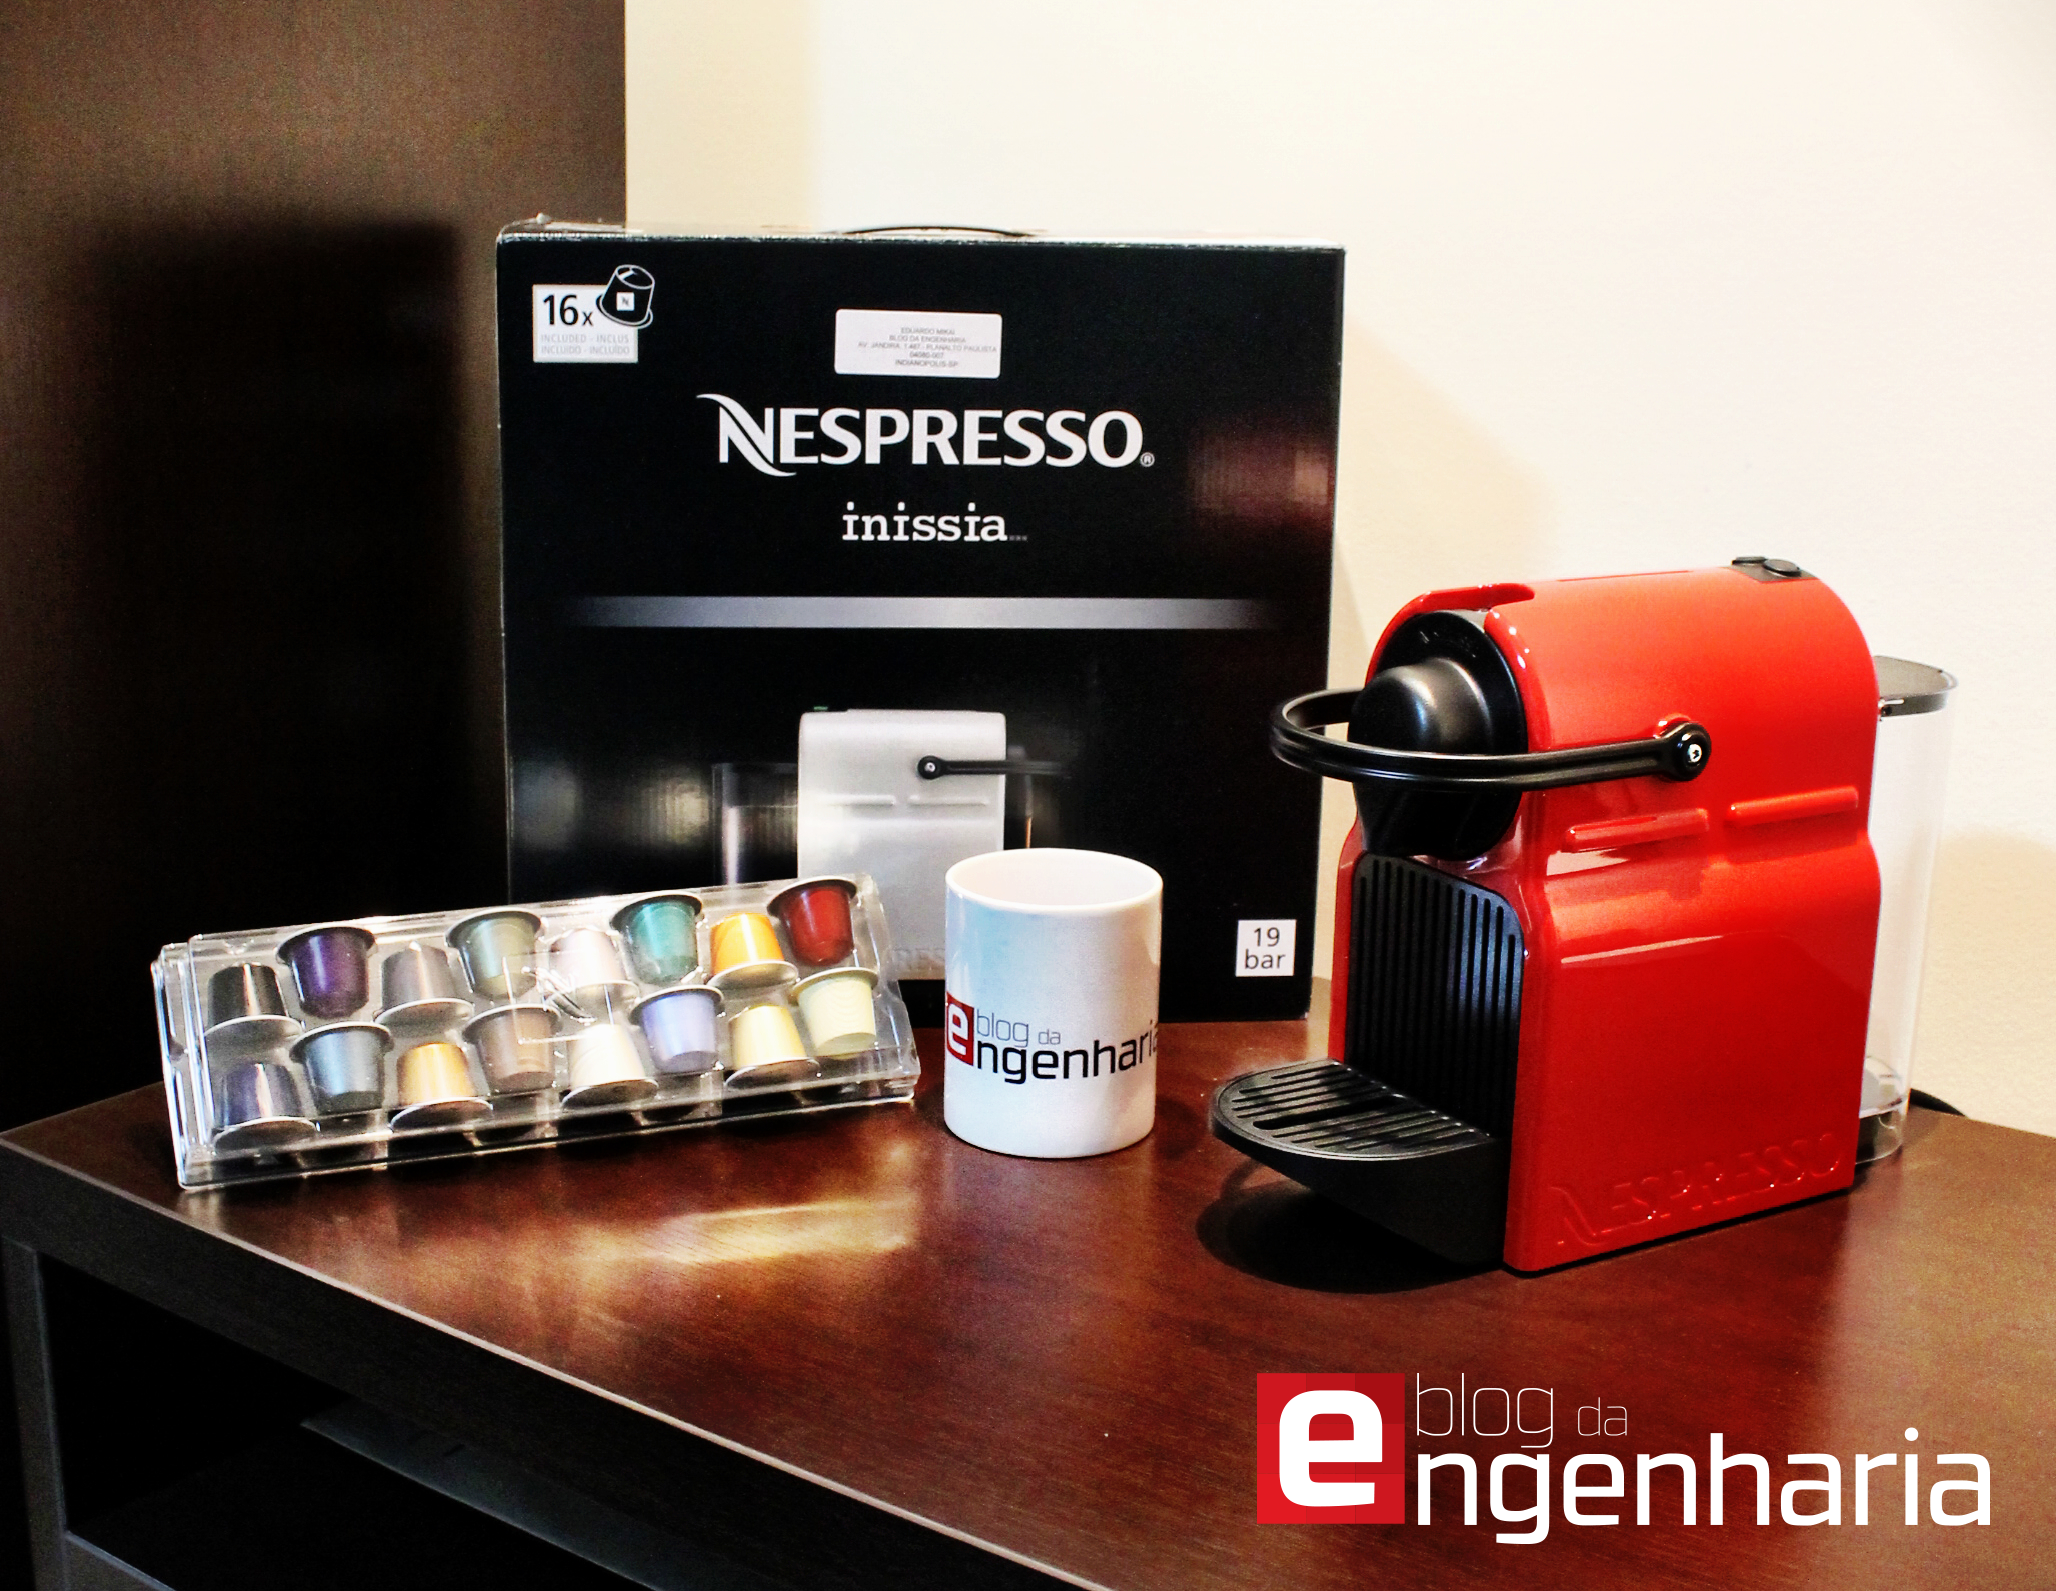 nespresso-blog-da-engenharia-review-01